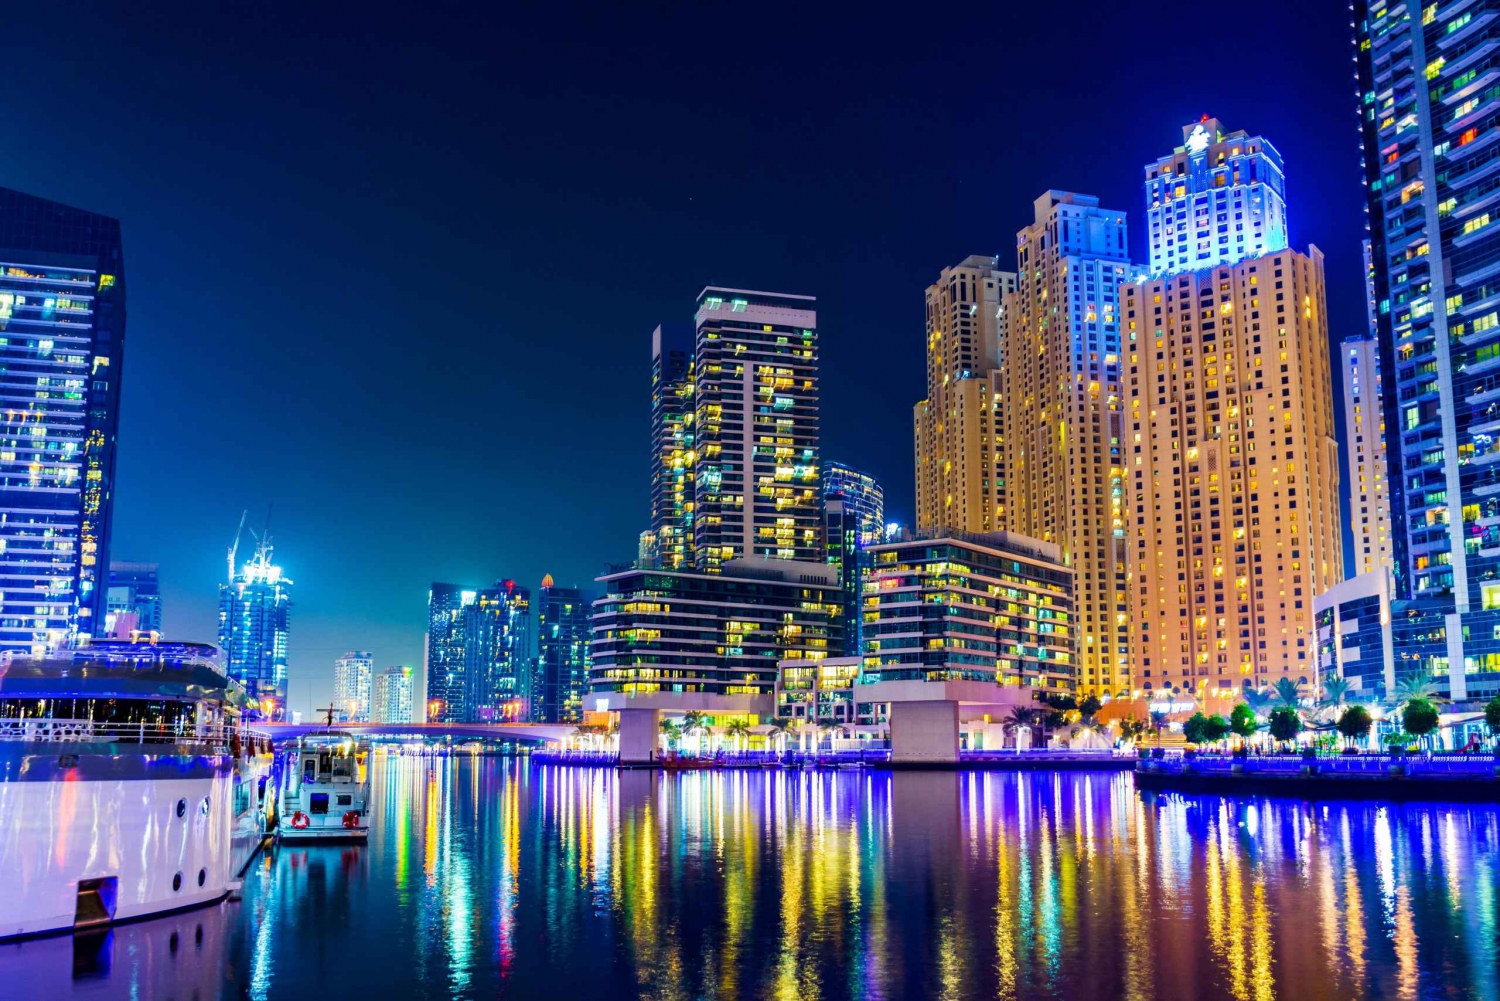 Dubai: Marina 5-Star Dinner Cruise with Live Entertainment